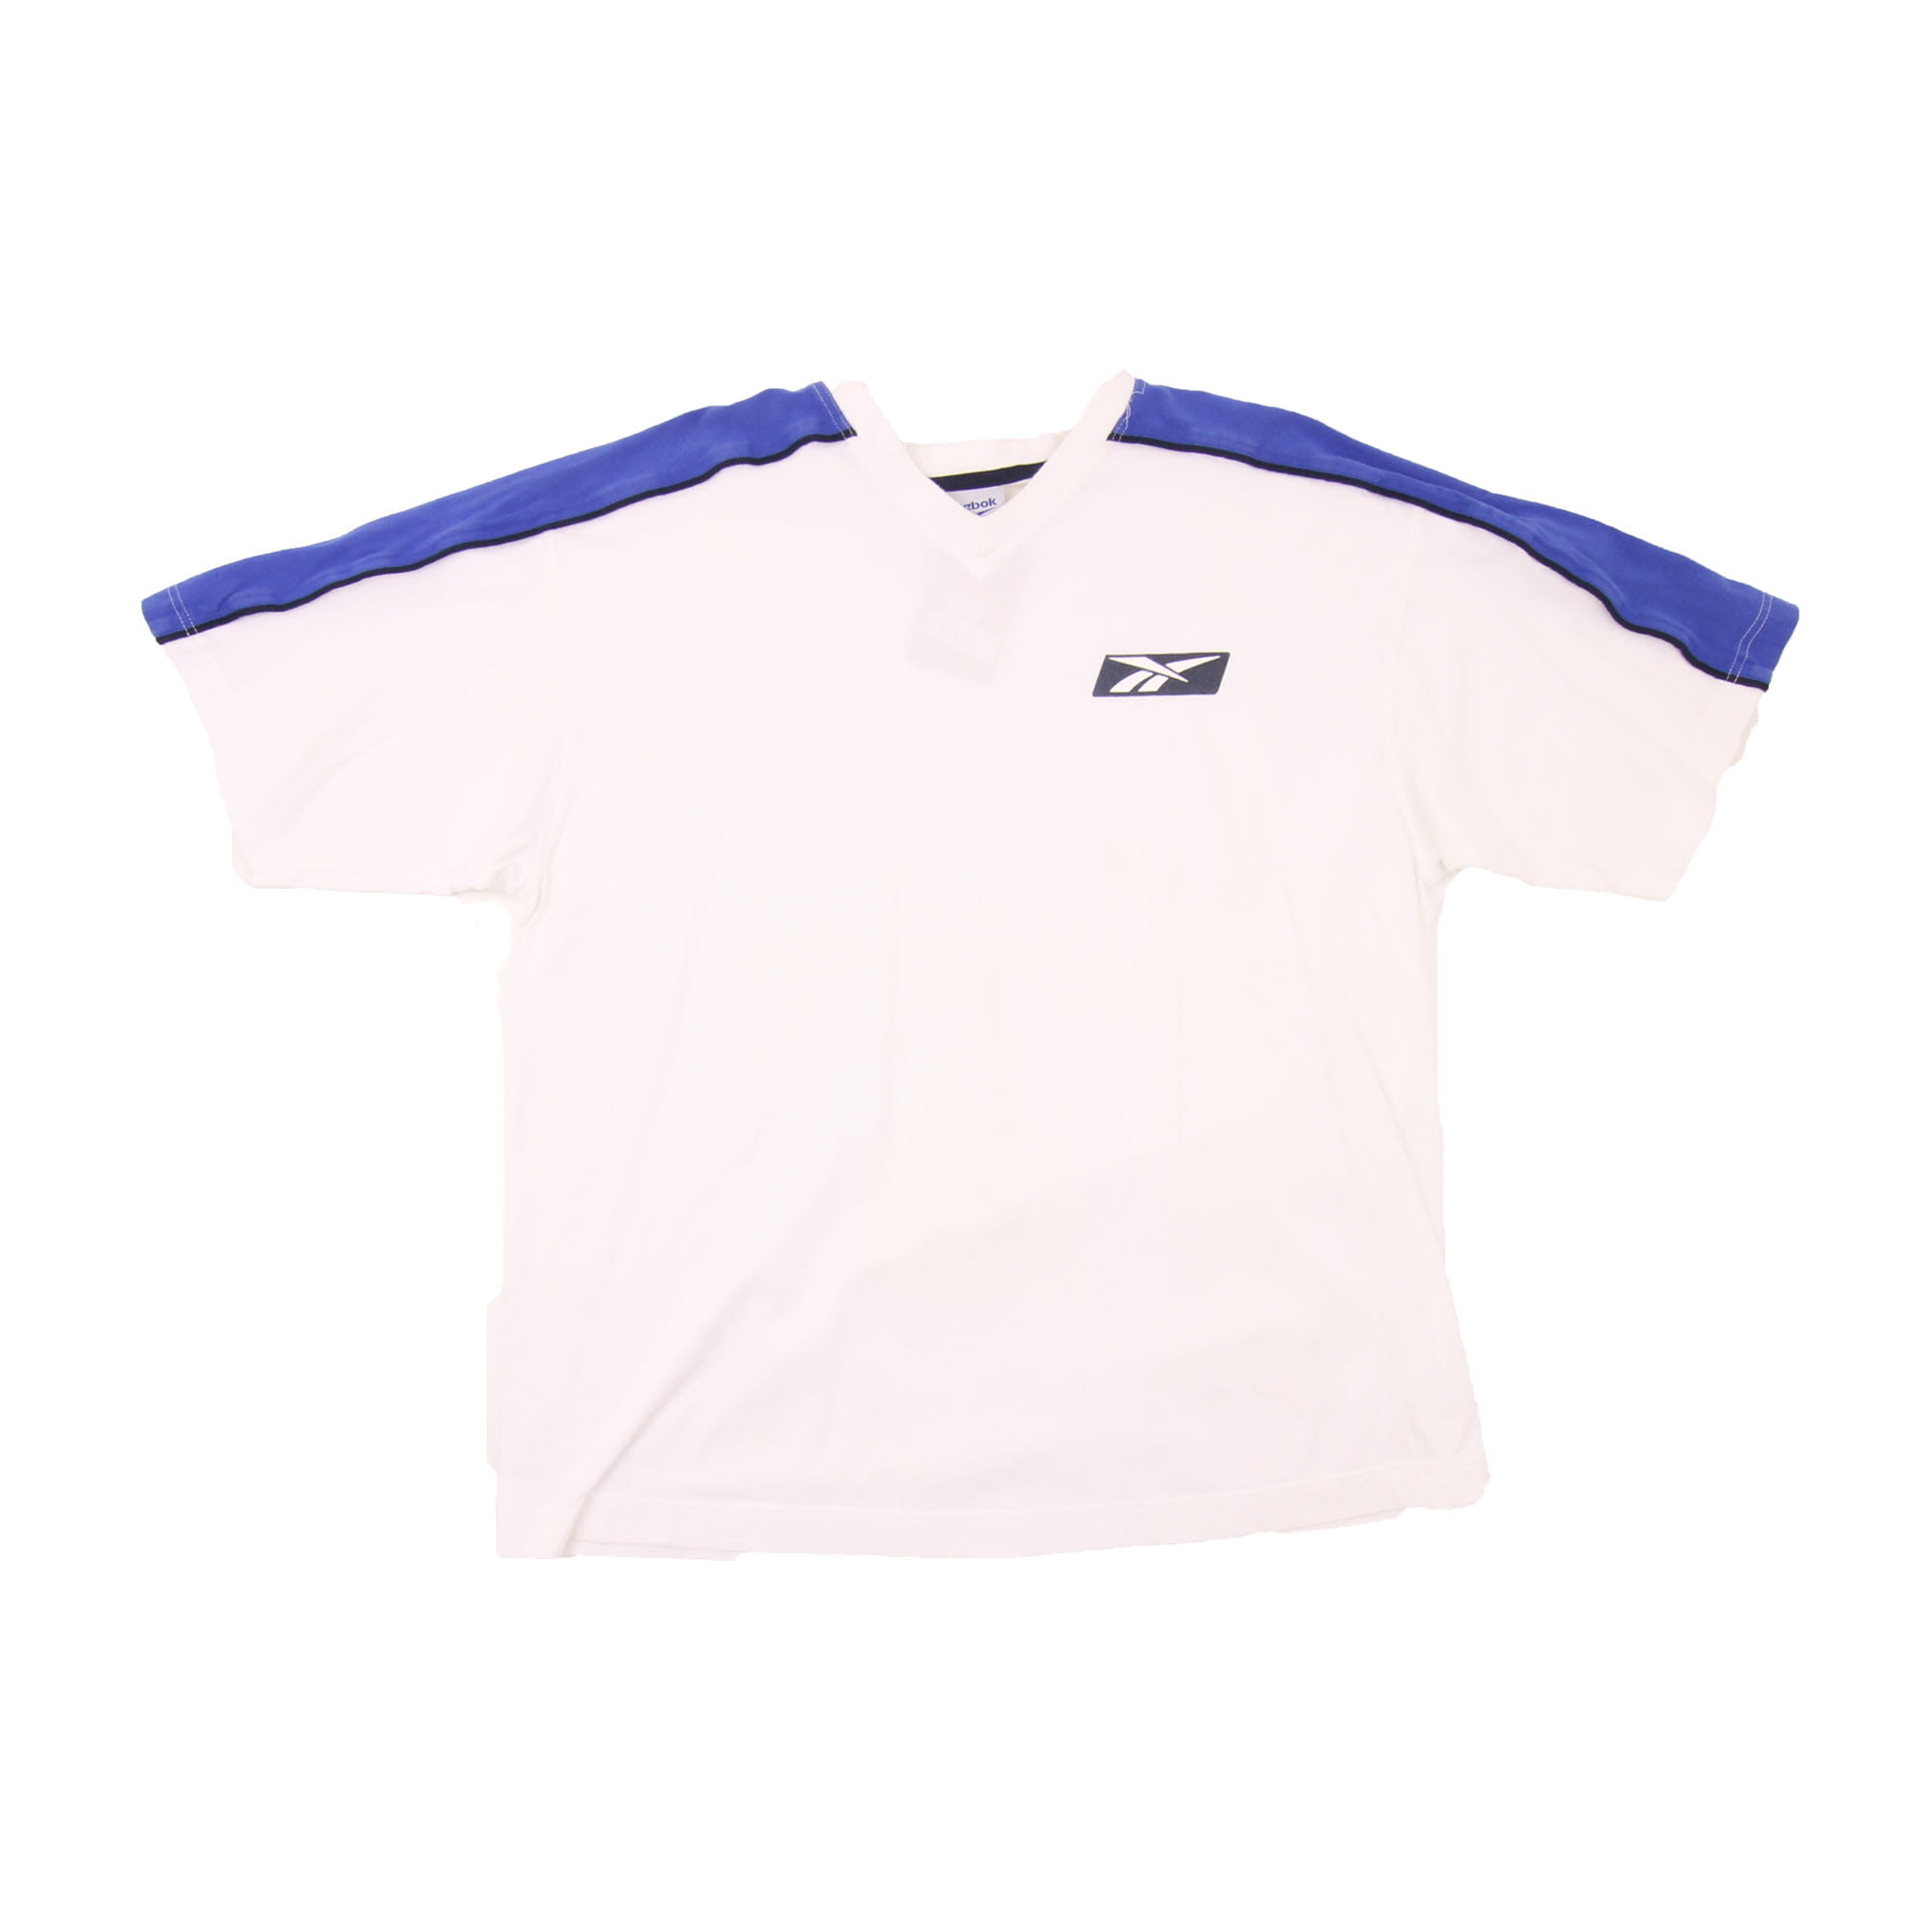 Reebok T-Shirt White -  L/XL